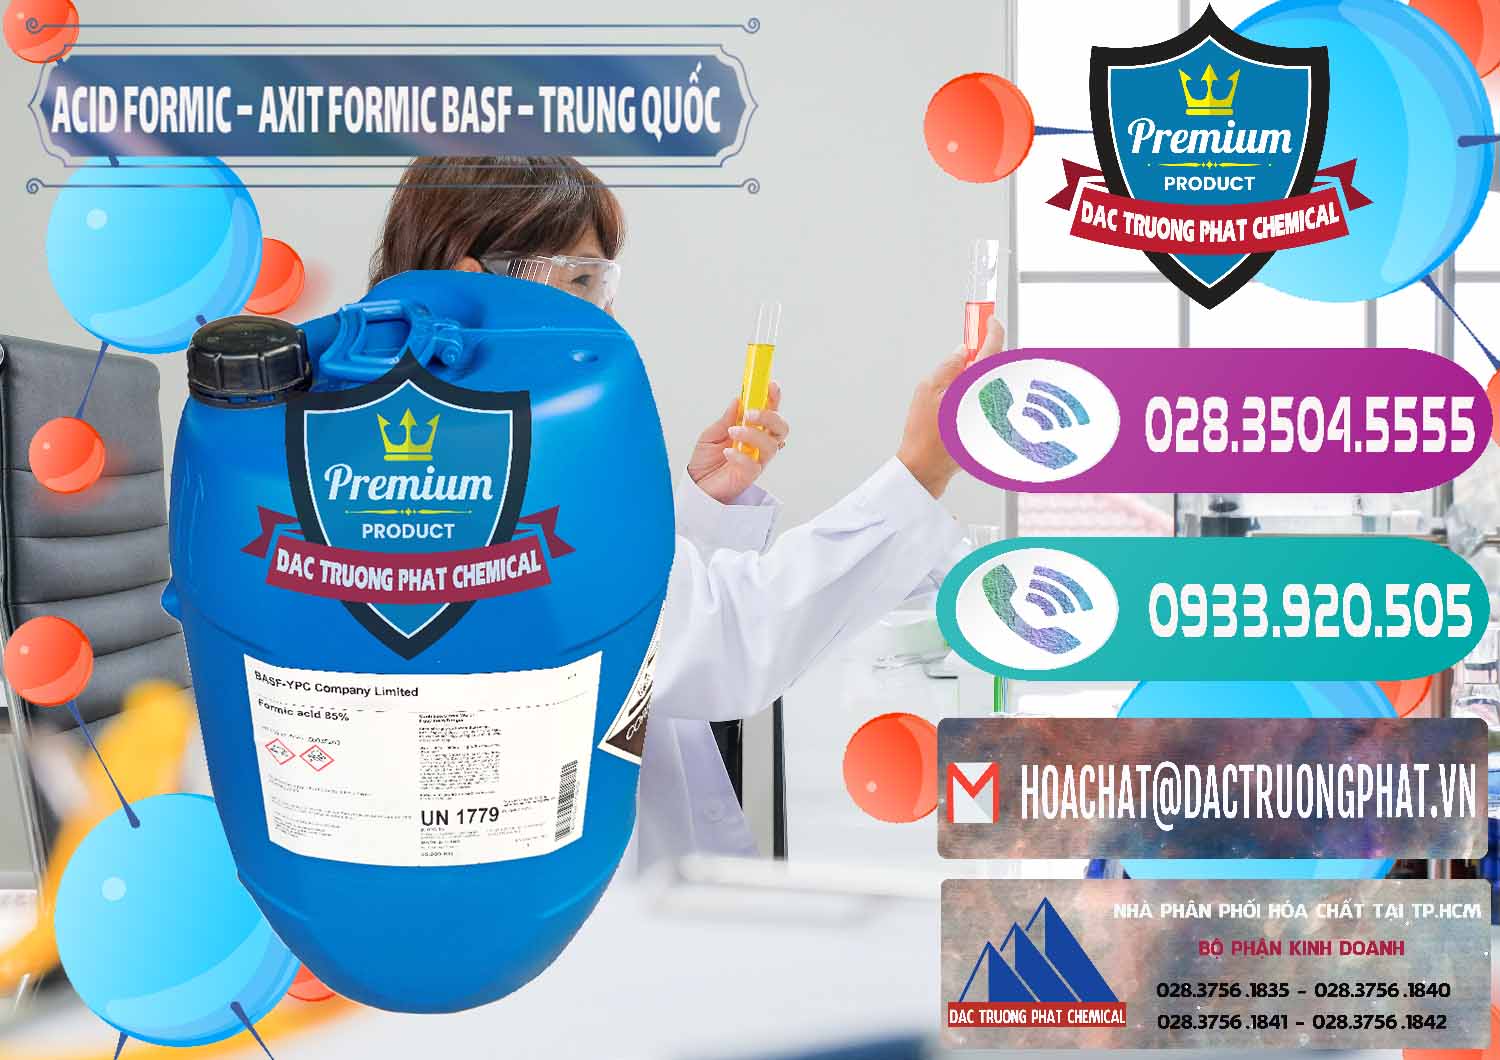 Cty nhập khẩu và bán Acid Formic - Axit Formic BASF Trung Quốc China - 0025 - Chuyên cung cấp và kinh doanh hóa chất tại TP.HCM - hoachatxulynuoc.com